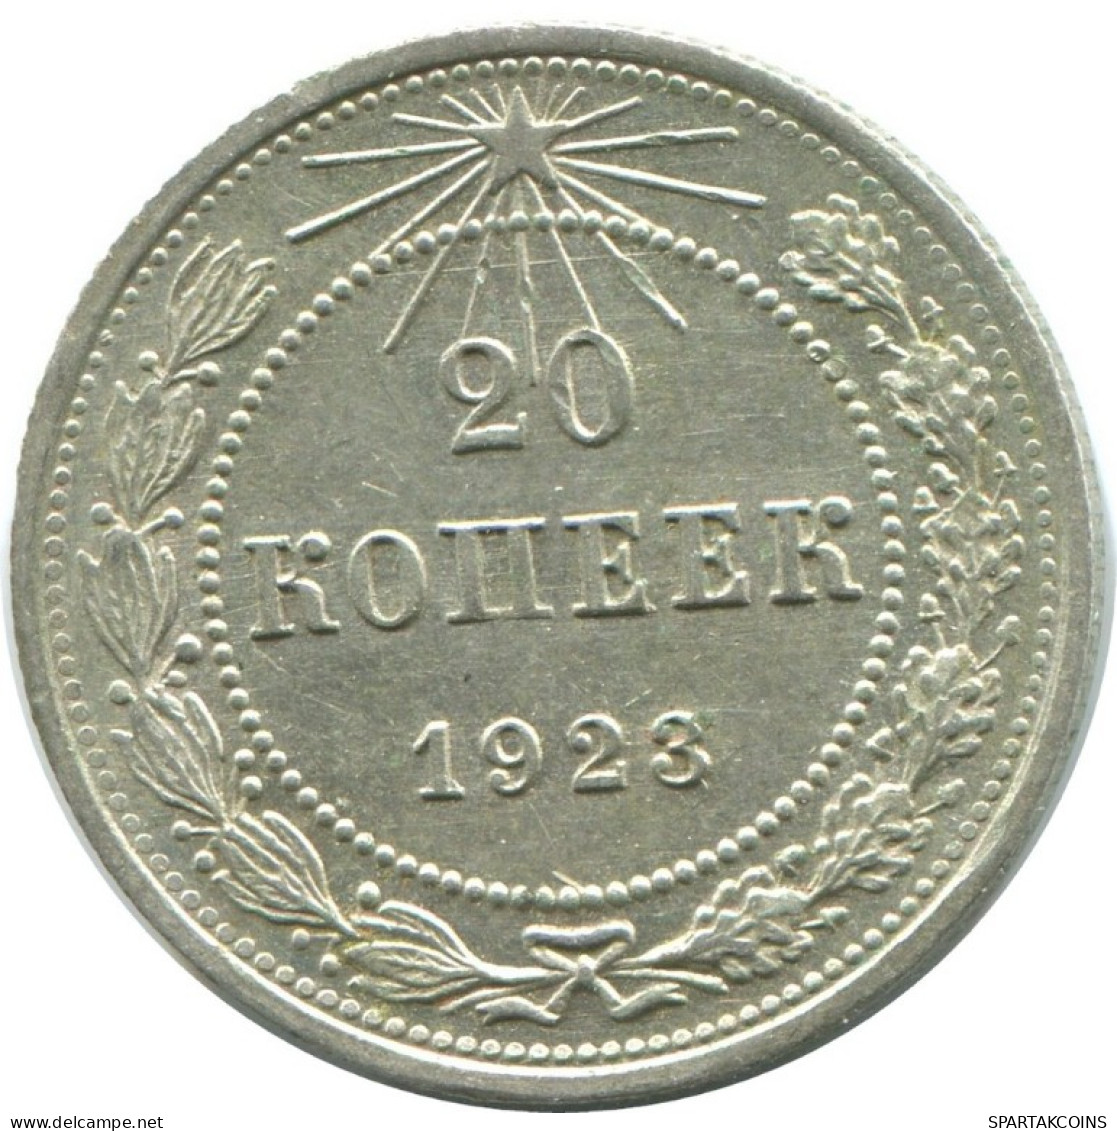 20 KOPEKS 1923 RUSSLAND RUSSIA RSFSR SILBER Münze HIGH GRADE #AF711.D.A - Rusia